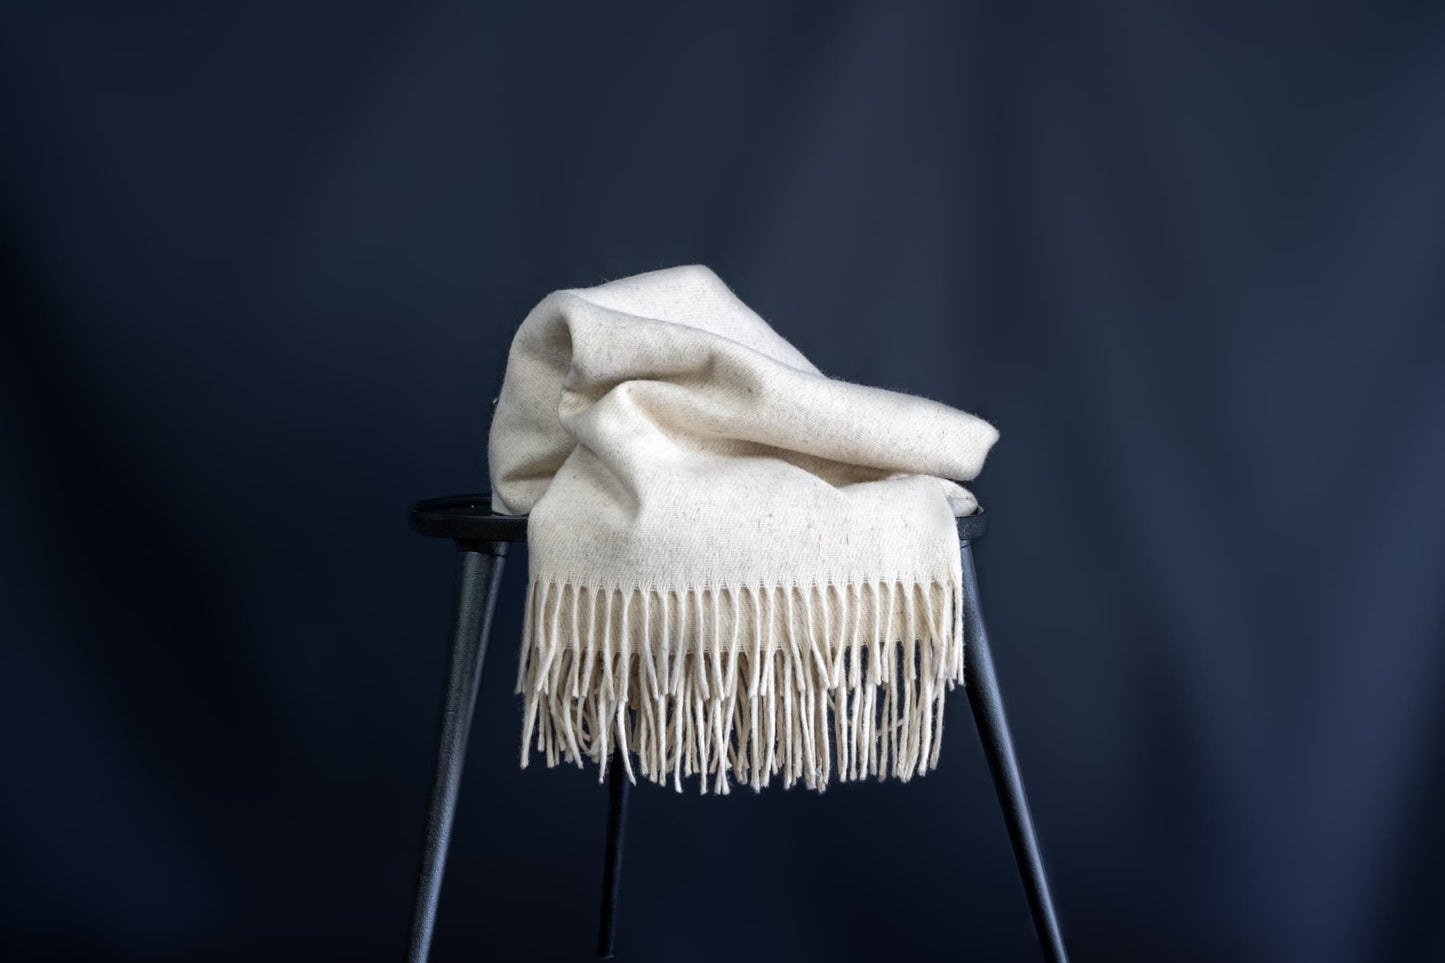 Natural Wool Cocoon Blanket - Ecru by Wool+Clay